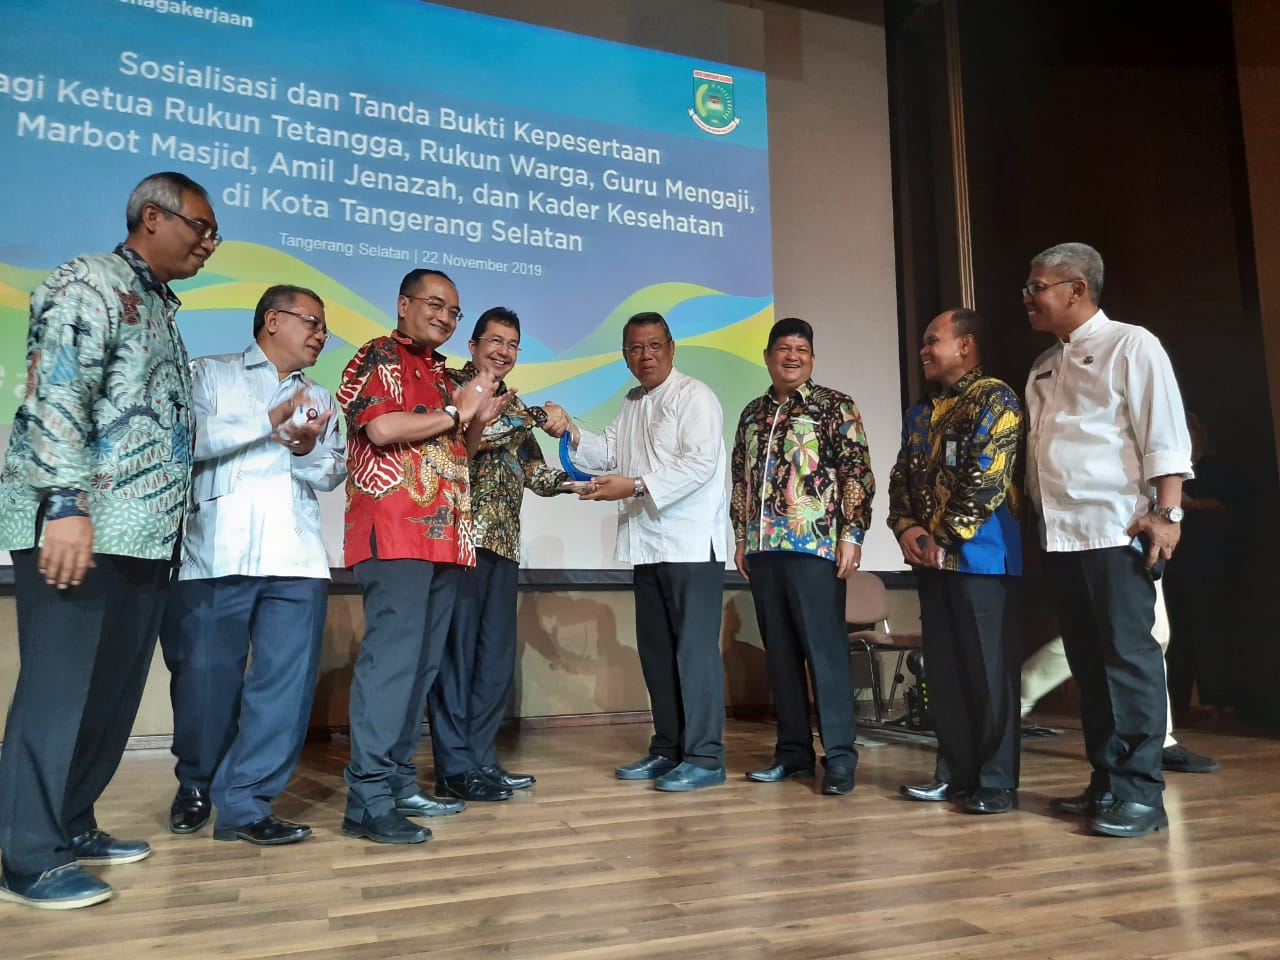 Wakil Wali Kota Tangerang Selatan, Benyamin Davnie saat memberikan penghargaan kepada Aparatur Sipil Negara dalam kegiatan Gerakan Sadar Jaminan Sosial Ketenagakerjaan Bagi Pekerja Rentan di Titan Centre, Bintaro pada Jumat, (22/11/2019).